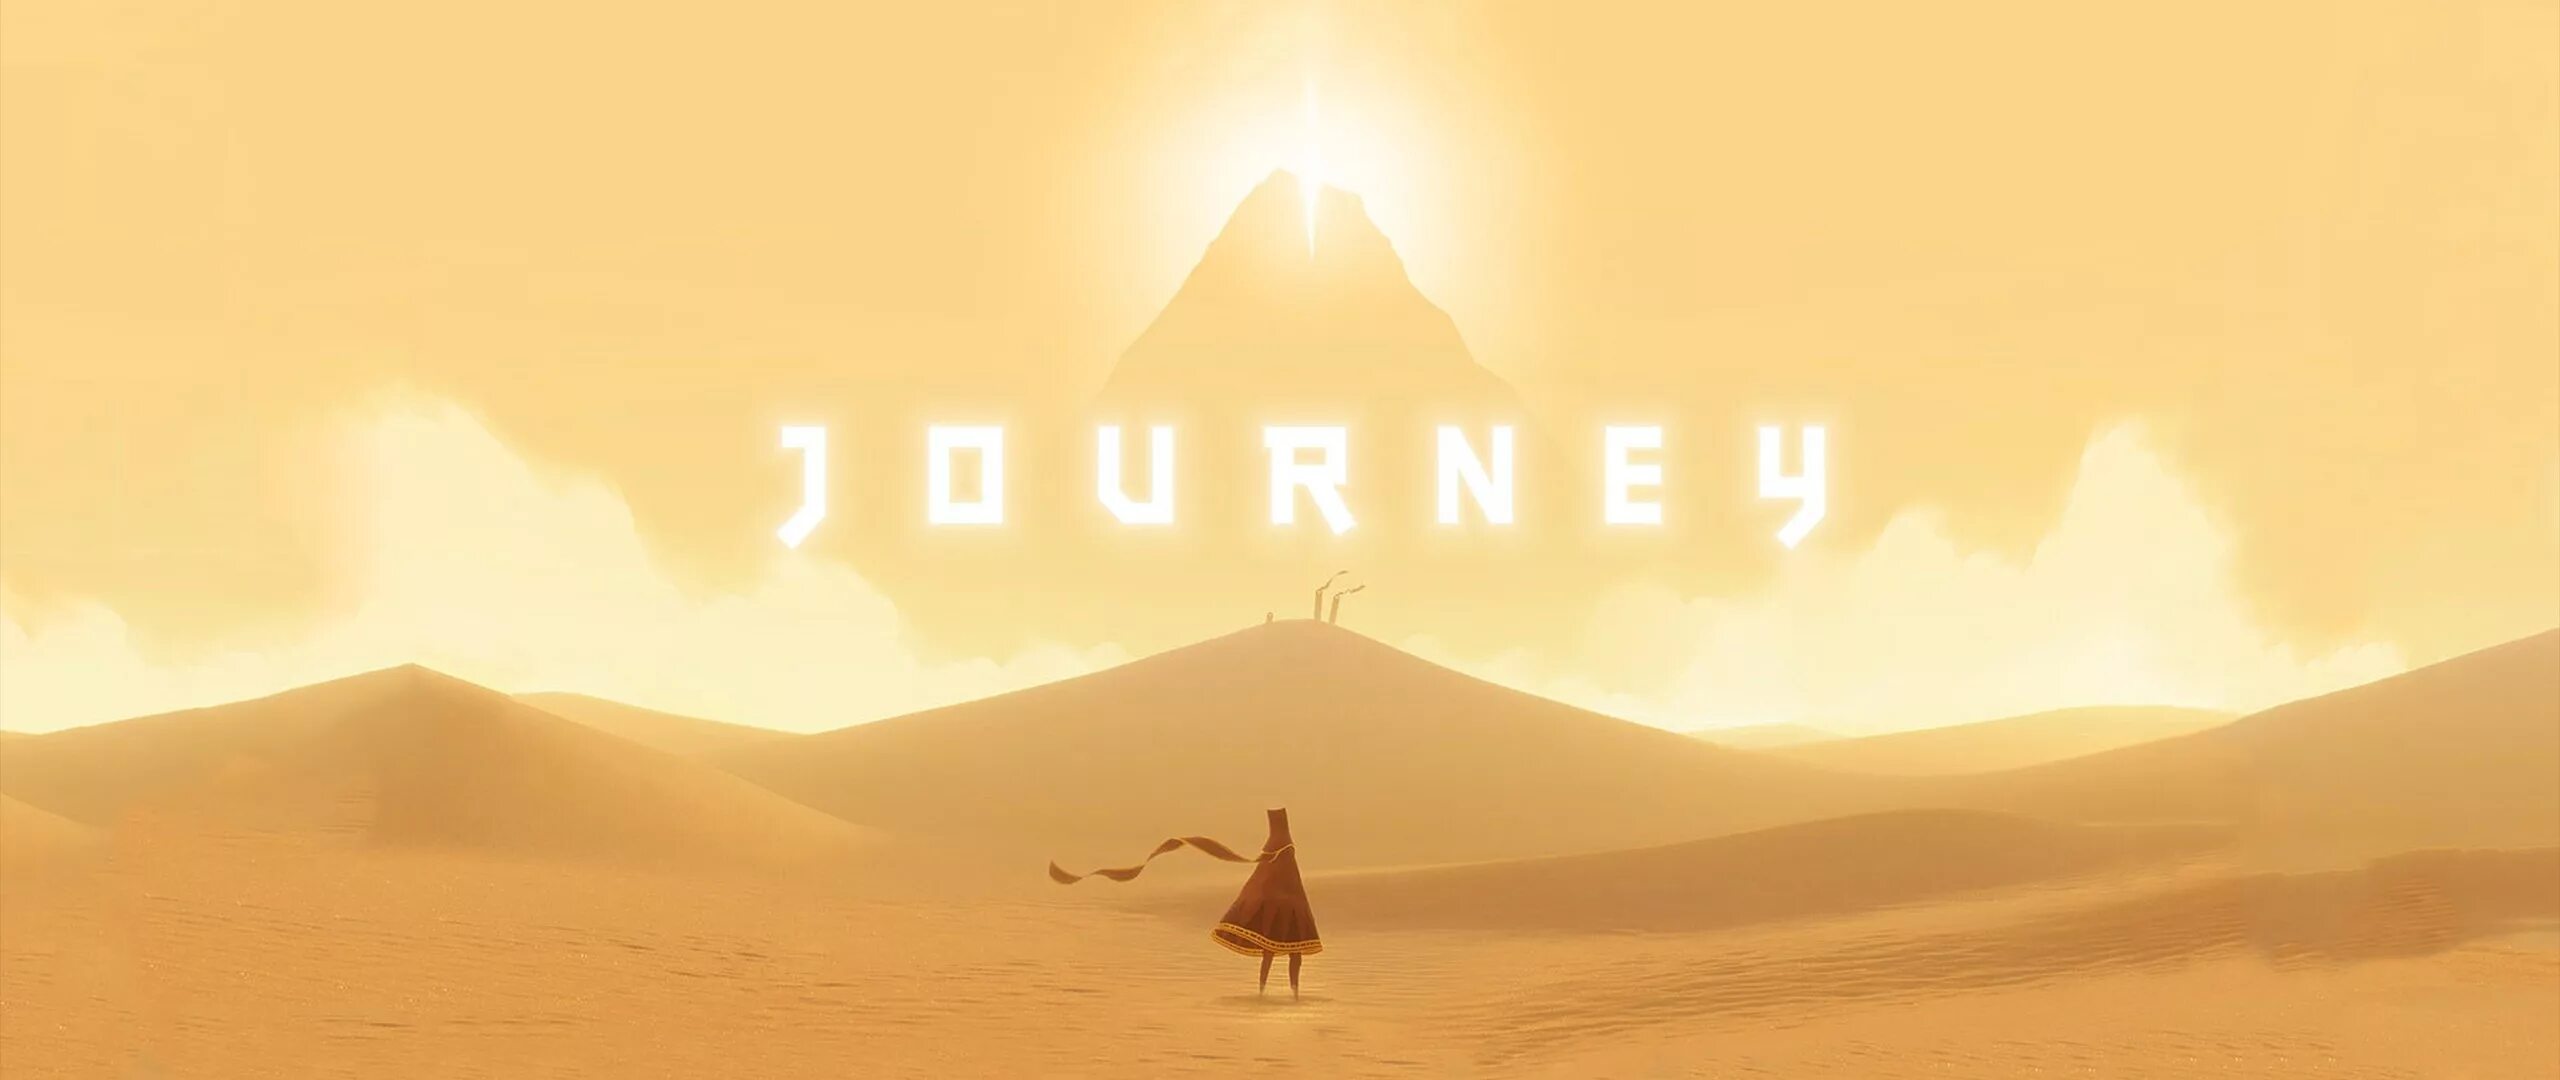 Джорни игра. Journey (игра, 2012). Джорни путешествие игра. Игра про пустыню.